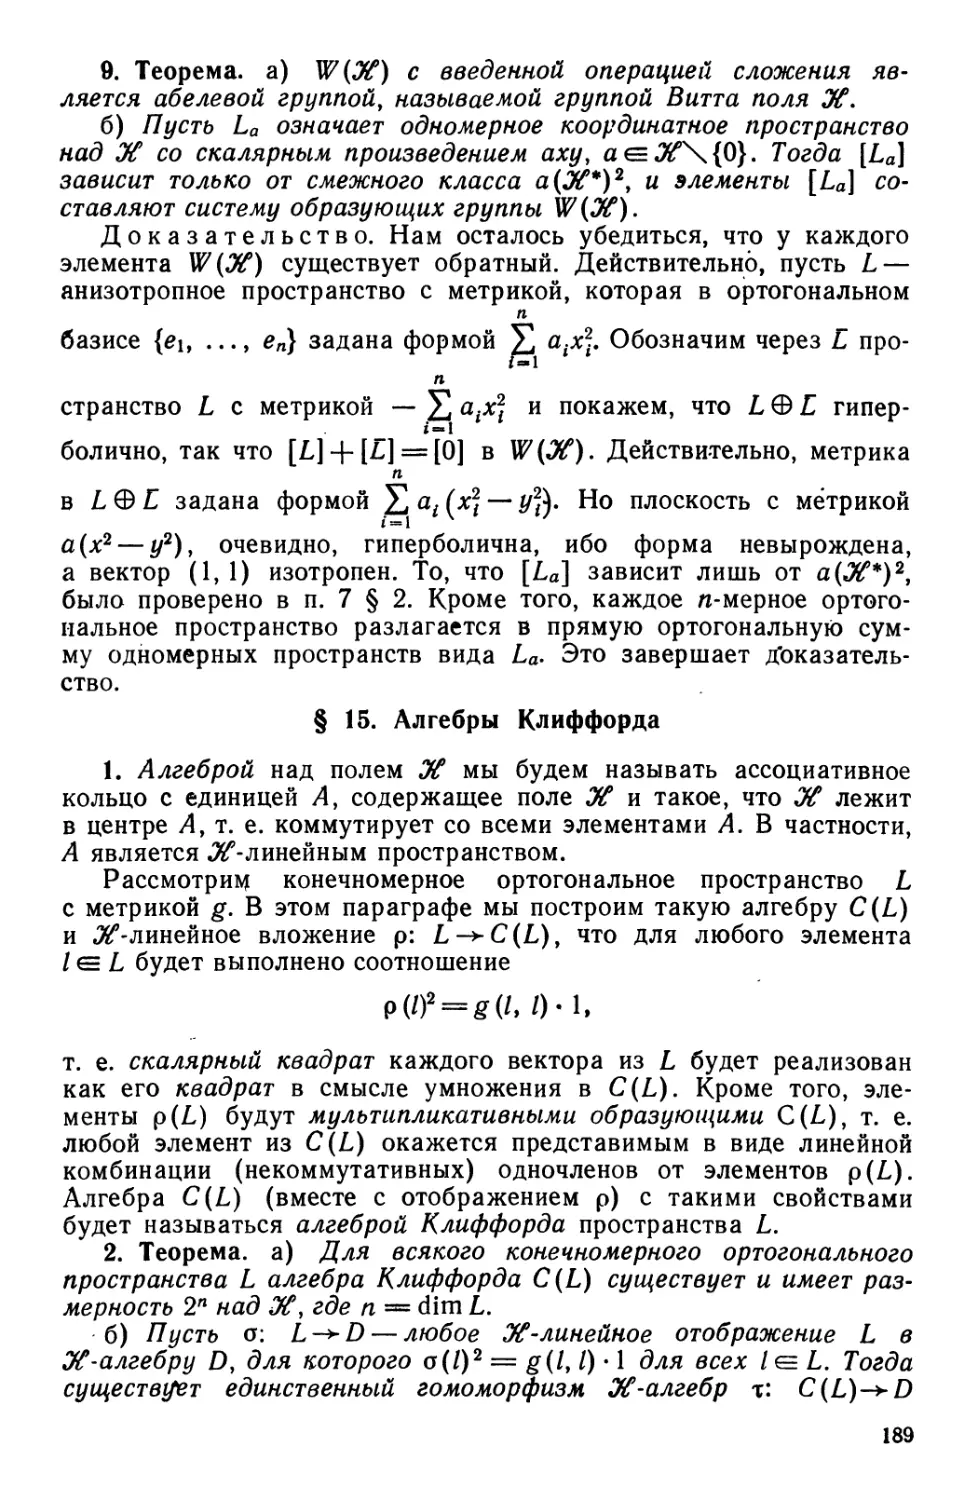 § 15. Алгебры Клиффорда